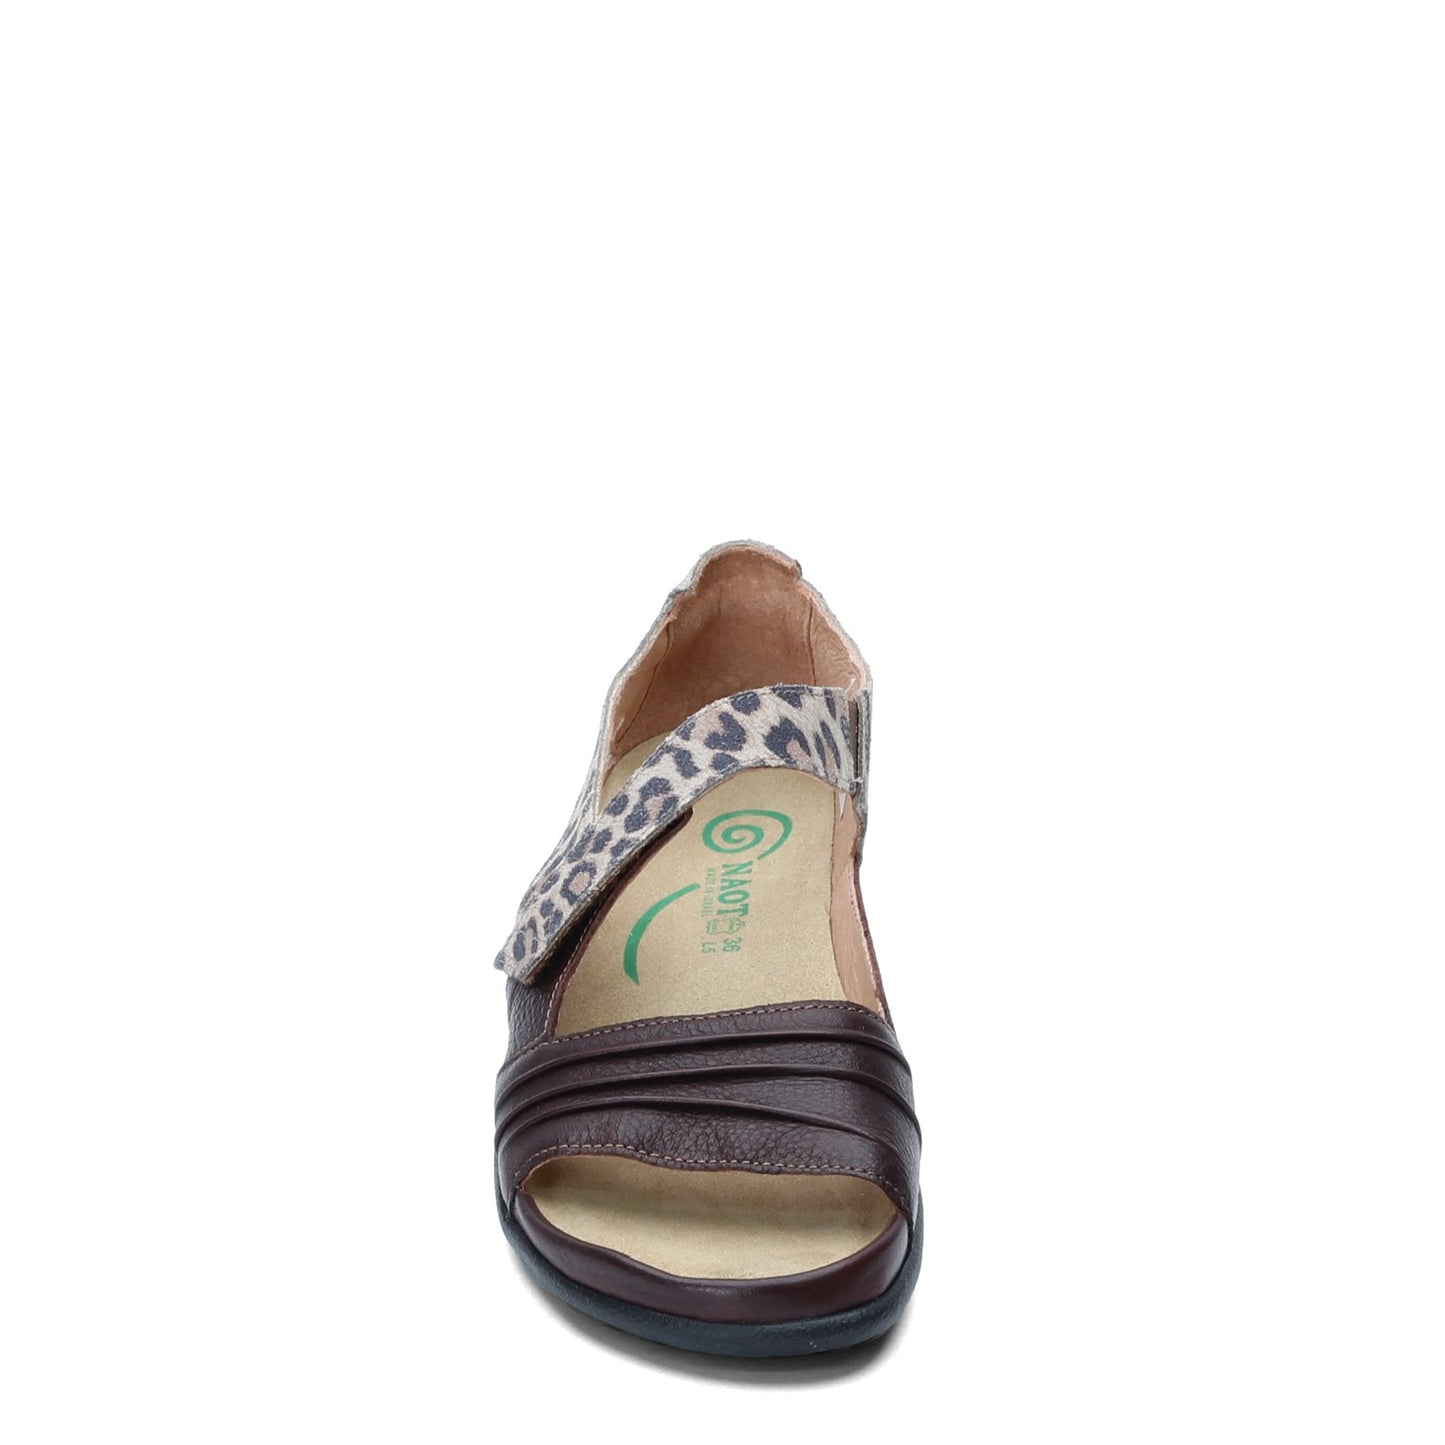 Peltz Shoes  Women's Naot Papaki Sandal BROWN CHEETAH 11125-SIL